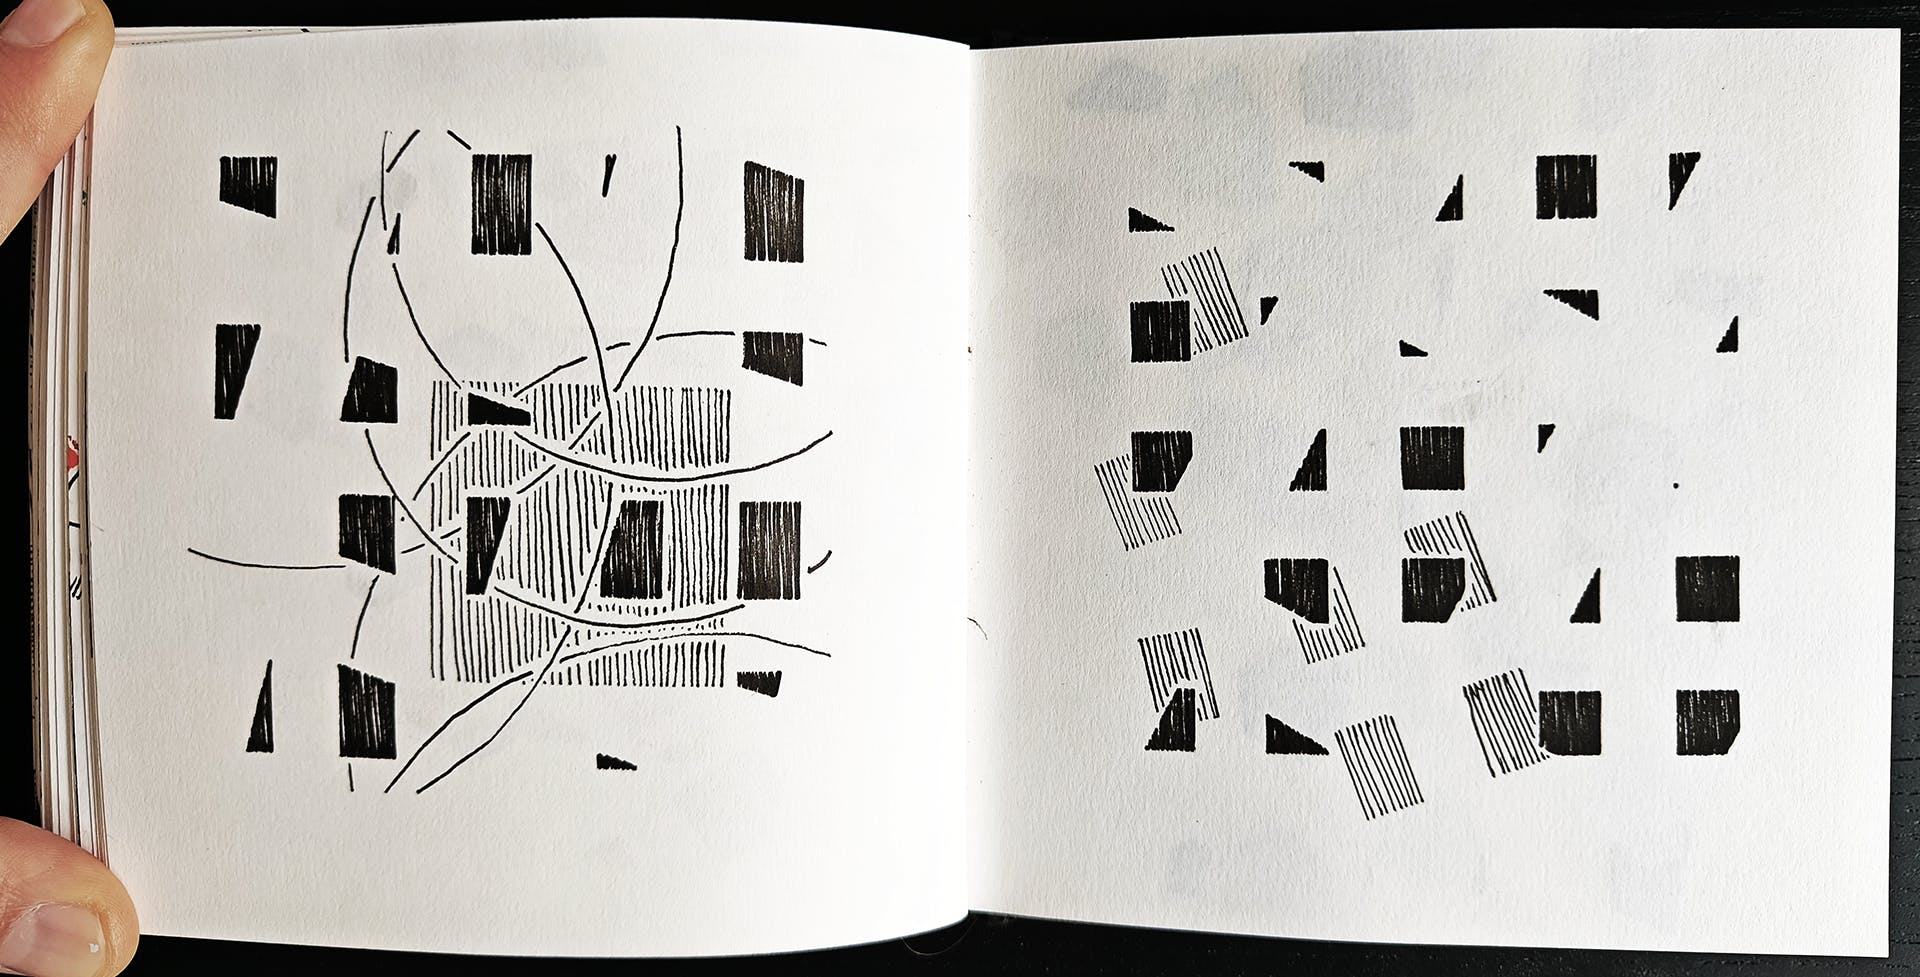 Deze 2 pagina's tonen experimenten met patronen in patronen. De composities kregen vorm door verschillende patronen over elkaar te plaatsen tot nieuwe patronen.